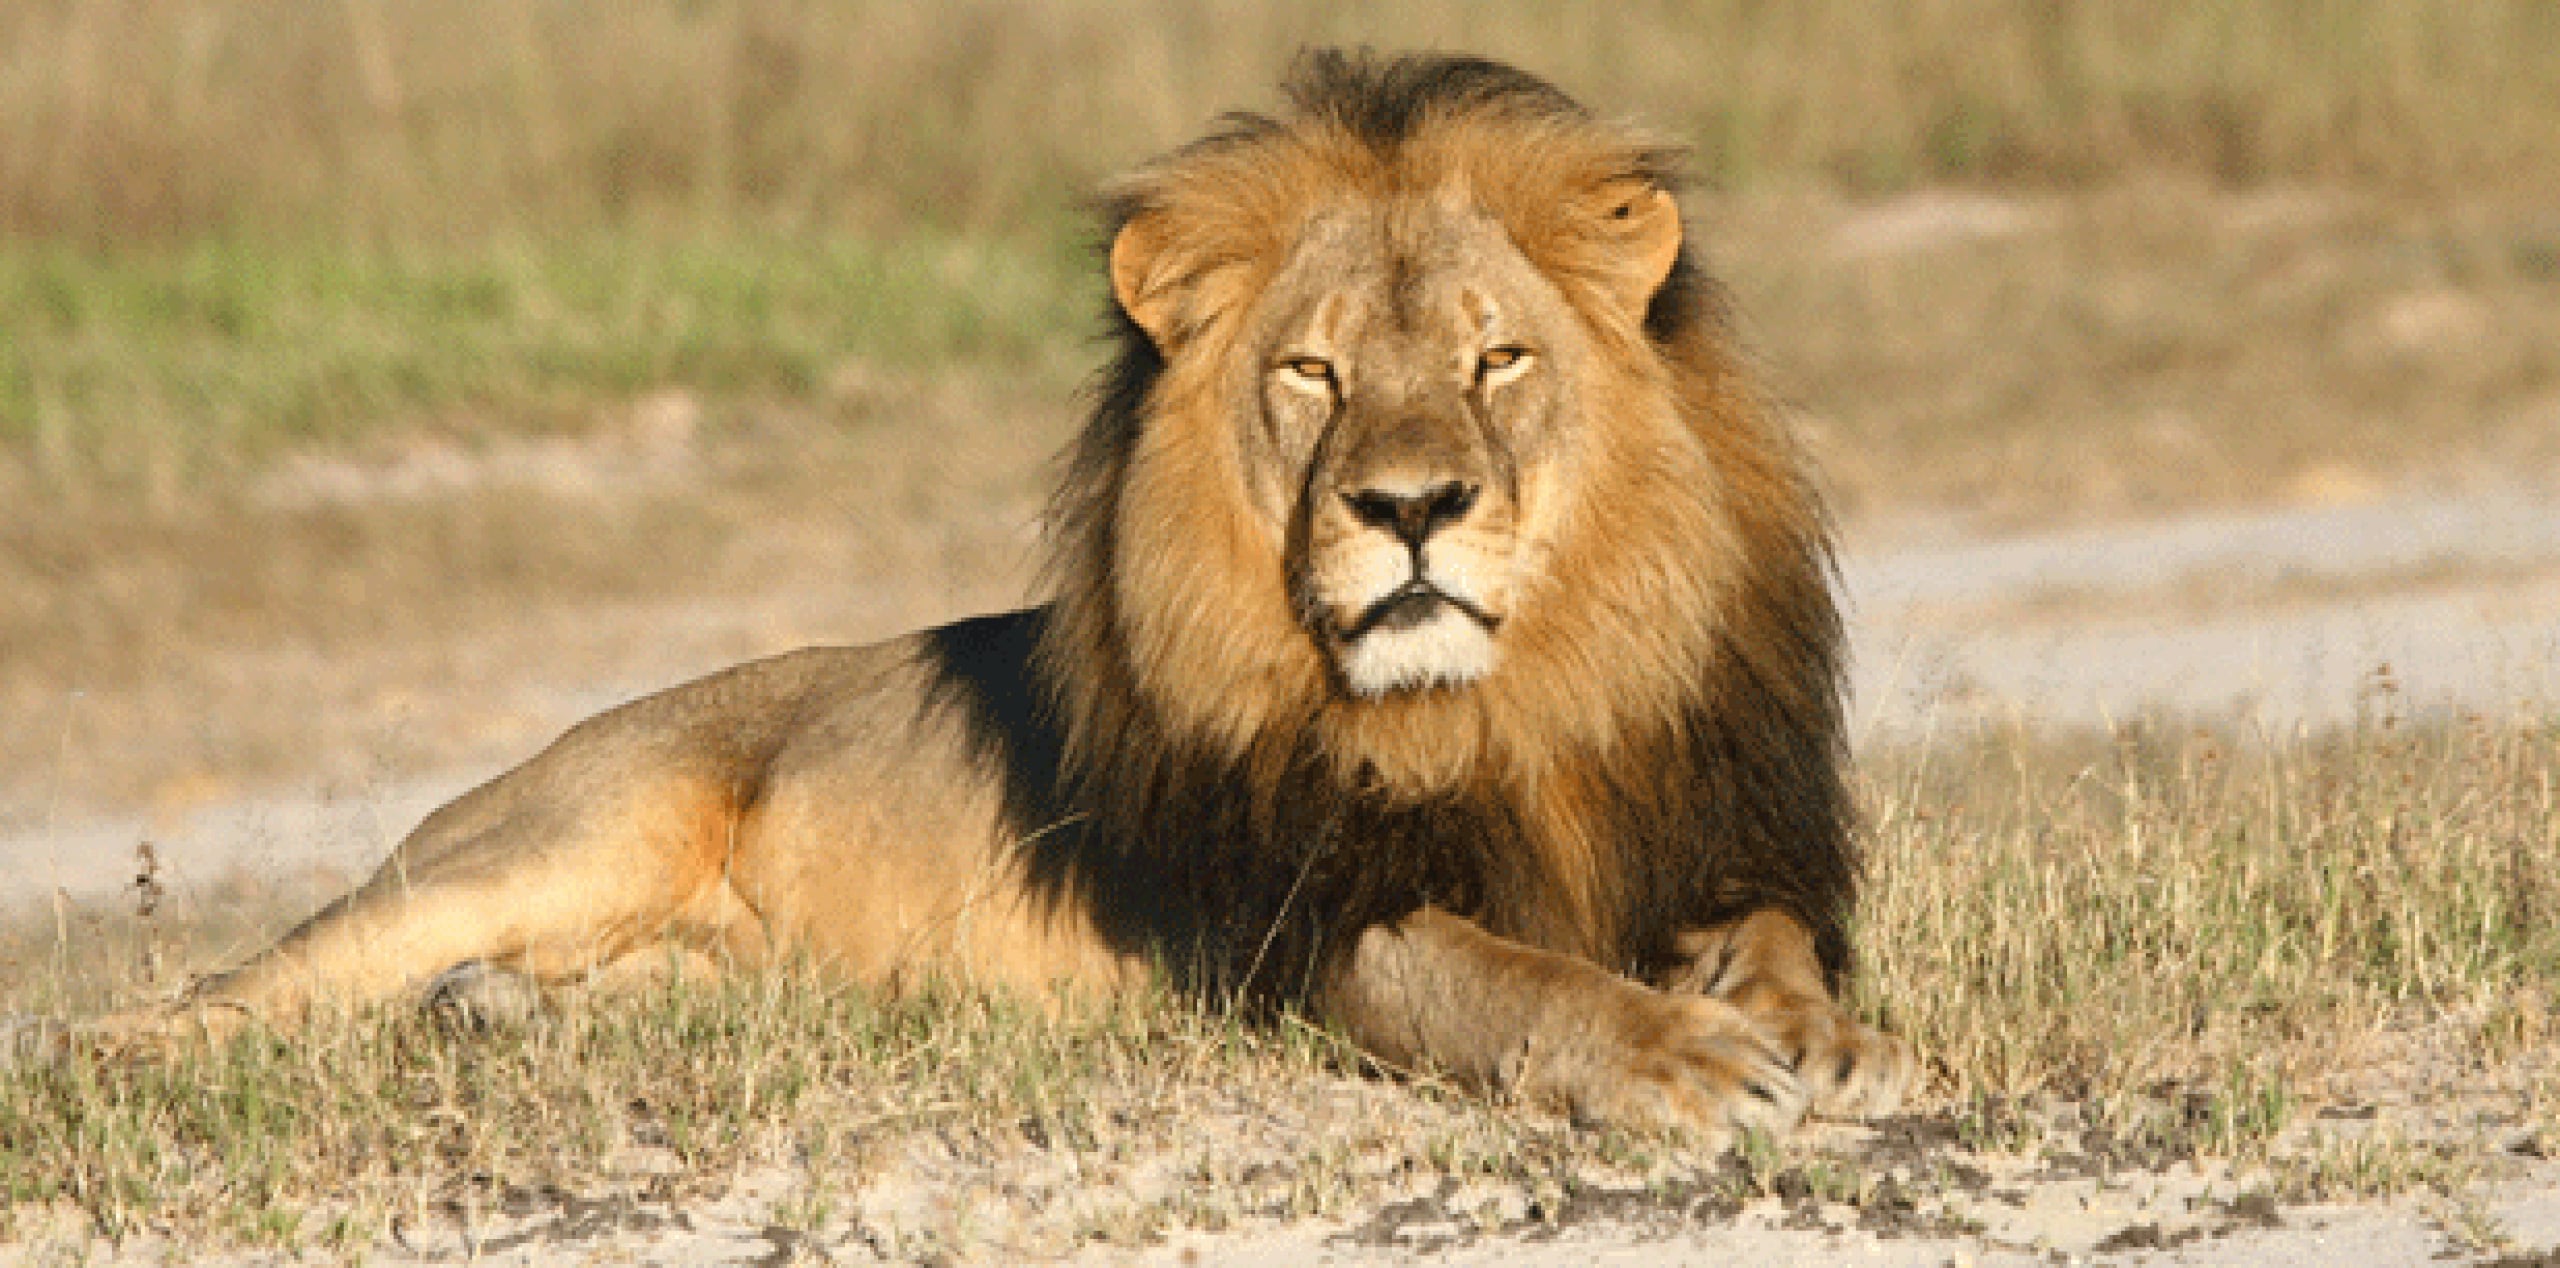 La medida tiene lugar después que un dentista estadounidense mató un león conocido, llamado Cecil, el mes pasado en Zimbabue en una cacería supuestamente ilegal, lo que provocó indignación internacional. (Archivo)